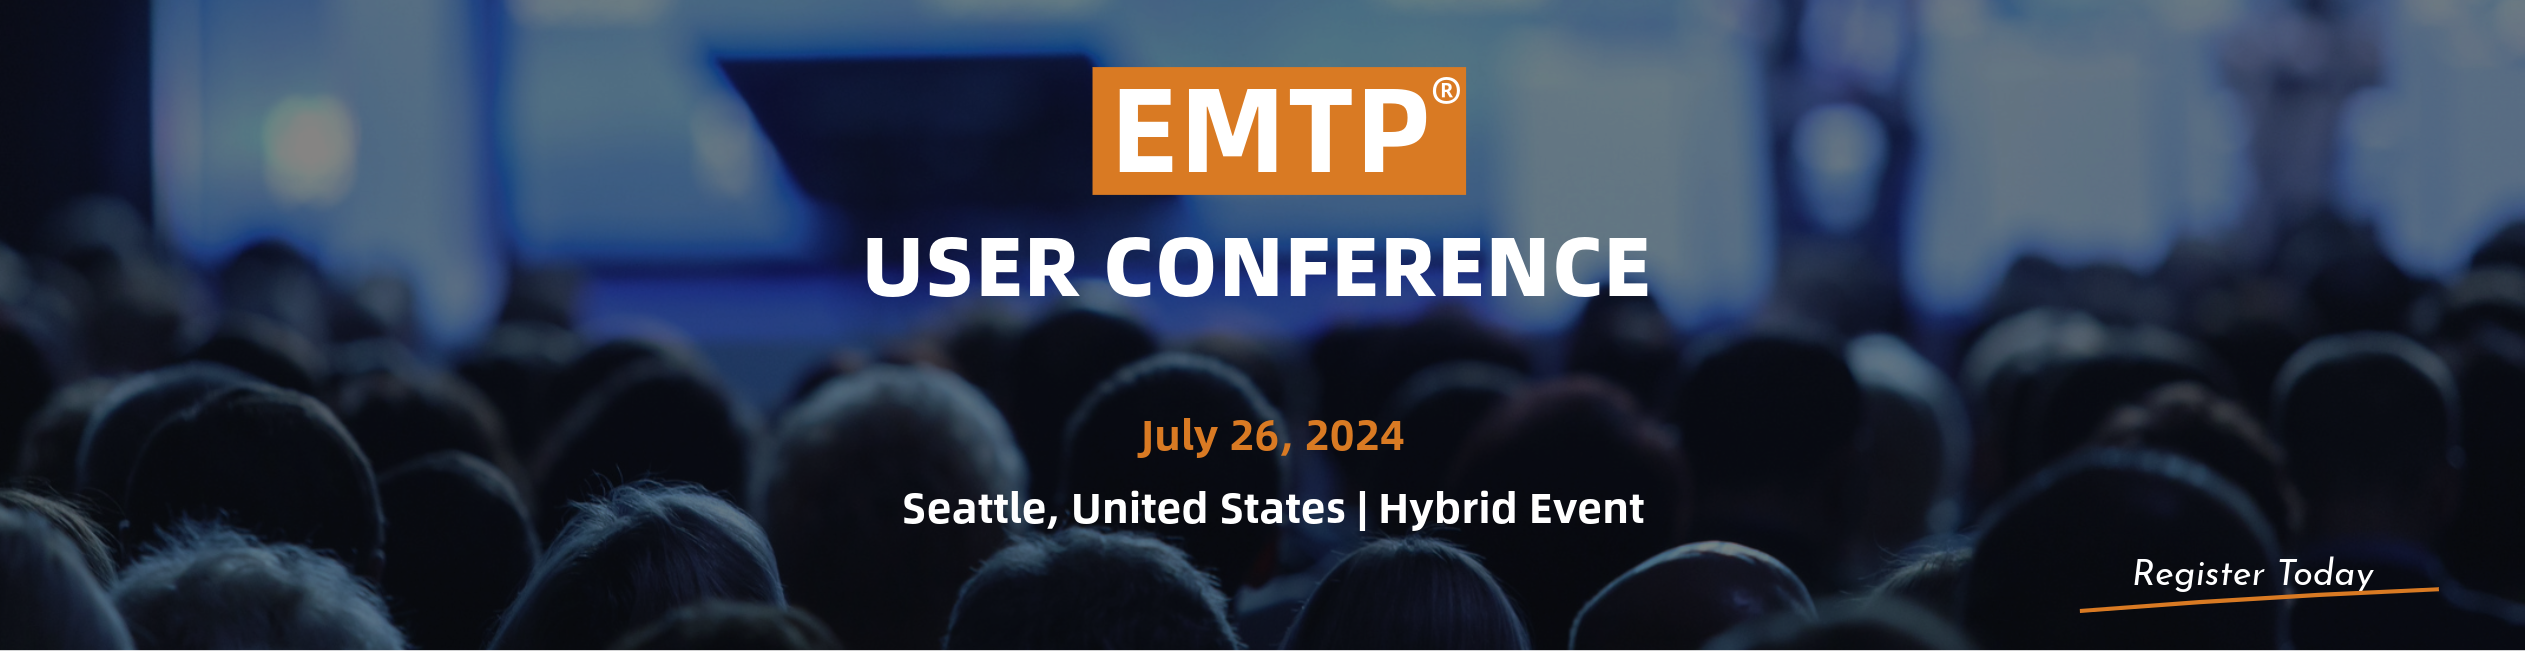 EMTP User Conference - Registration Page